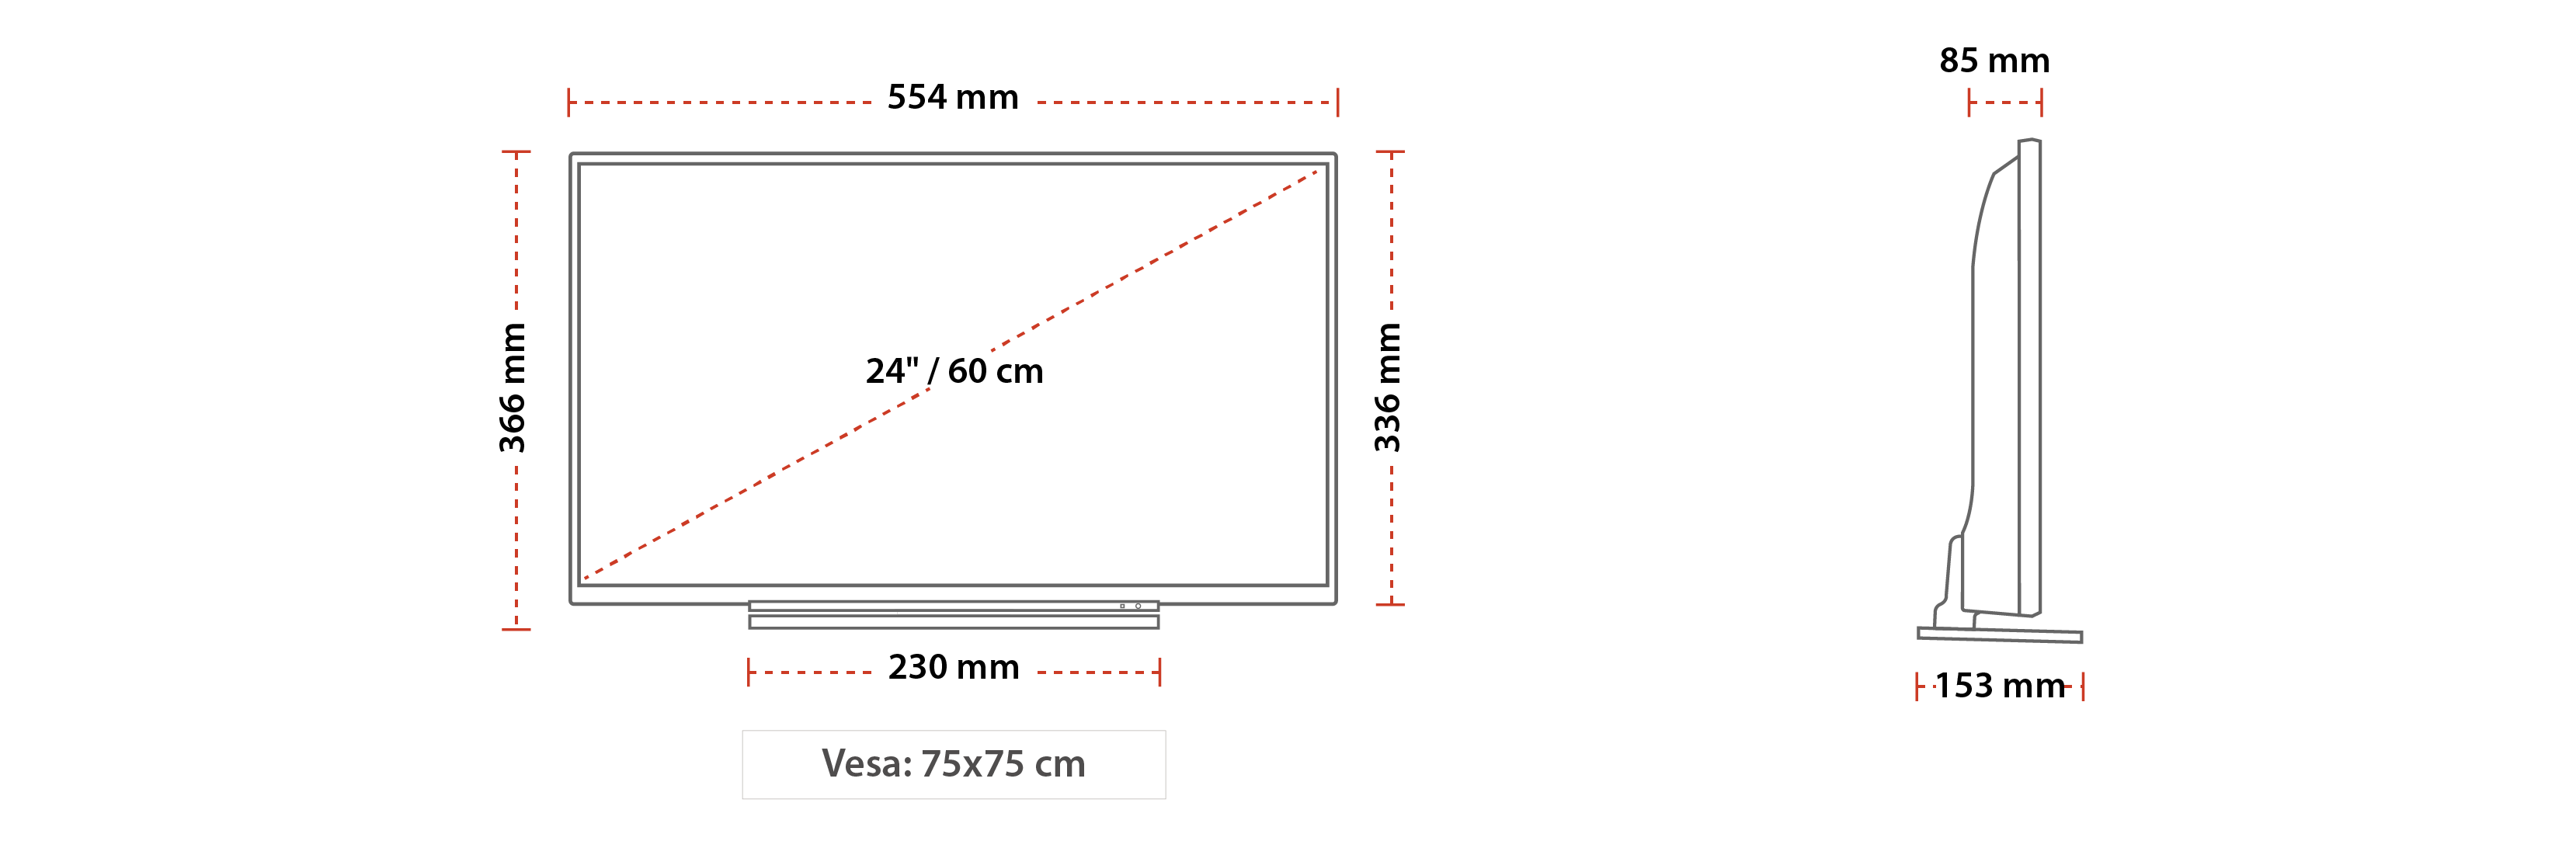 Экран 64 см высота. Самсунг телевизор 65 дюймов габариты чертеж. Экран диагональ 150 дюймов чертеж. TV 65 дюймов Razmer. Габариты телевизора 32 дюйма.